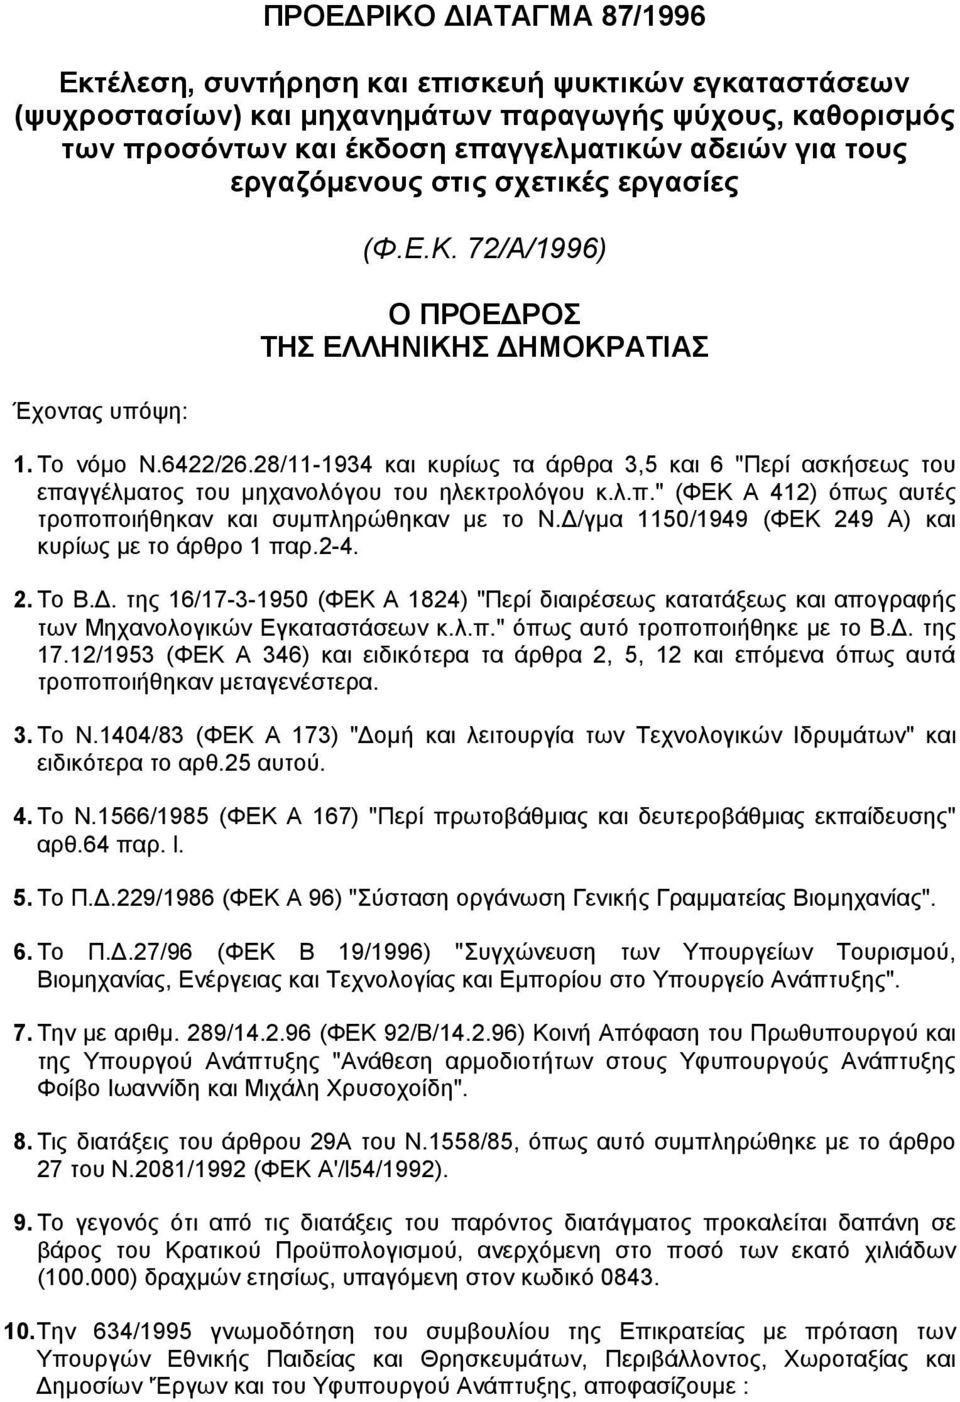 28/11-1934 και κυρίως τα άρθρα 3,5 και 6 "Περί ασκήσεως του επαγγέλµατος του µηχανολόγου του ηλεκτρολόγου κ.λ.π." (ΦΕΚ Α 412) όπως αυτές τροποποιήθηκαν και συµπληρώθηκαν µε το Ν.